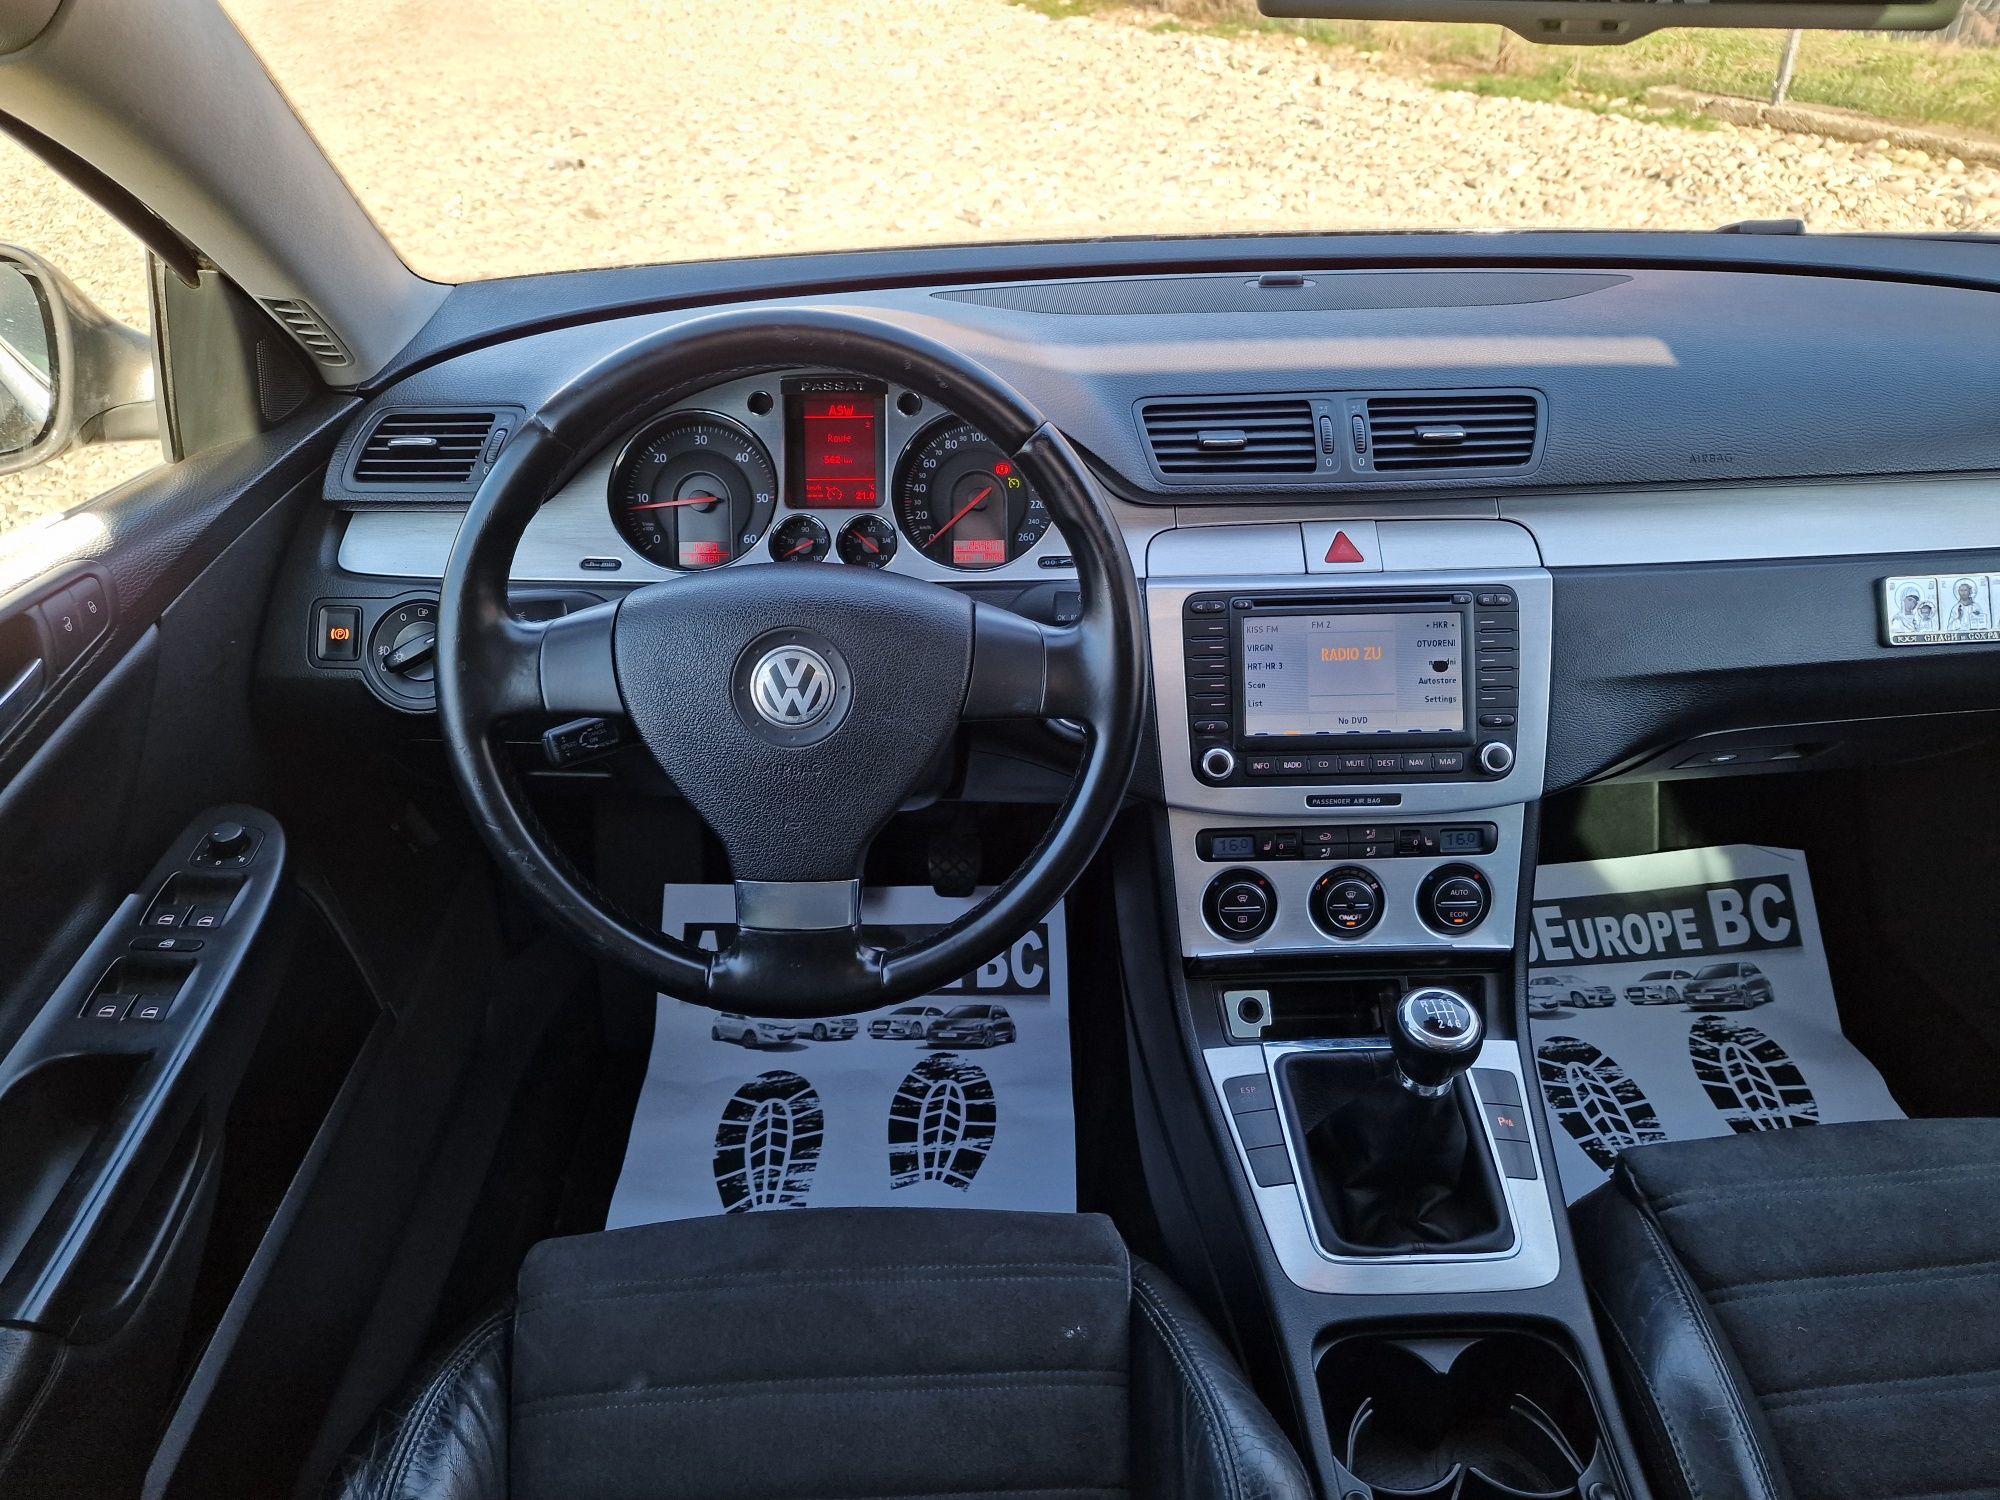 Volkswagen Passat 2.0 diesel an 2007 piele navigatie trapa

POSIBILITA